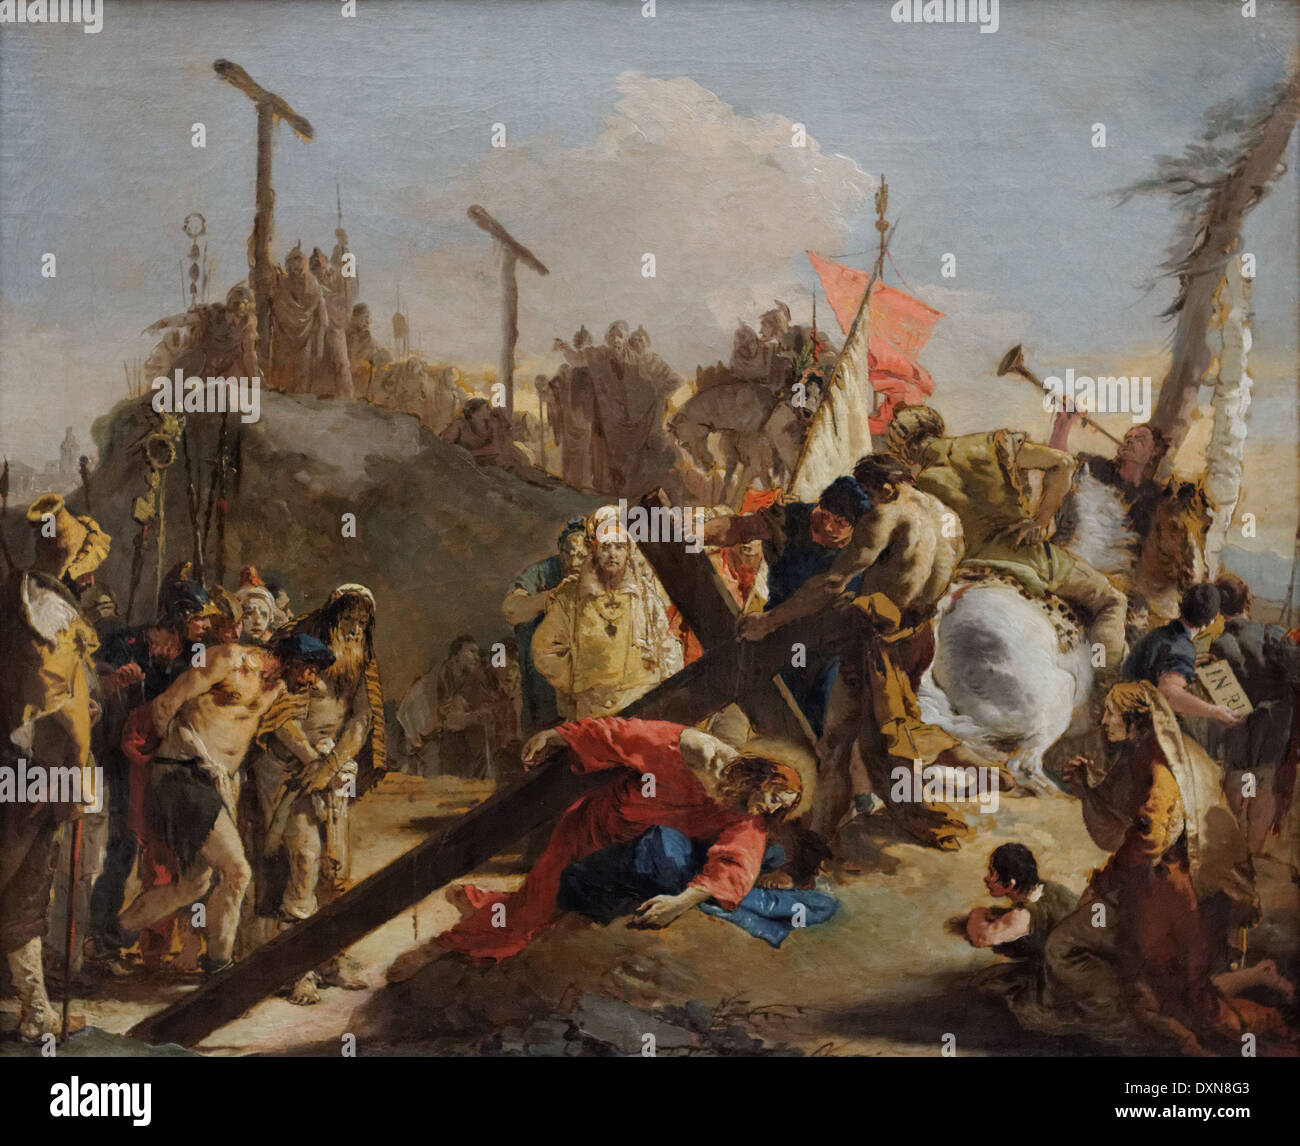 Giovanni Battista Tiepolo - Le Christ portant la croix - 1738 - XVIII ème siècle - École italienne - Gemäldegalerie - Berlin Banque D'Images